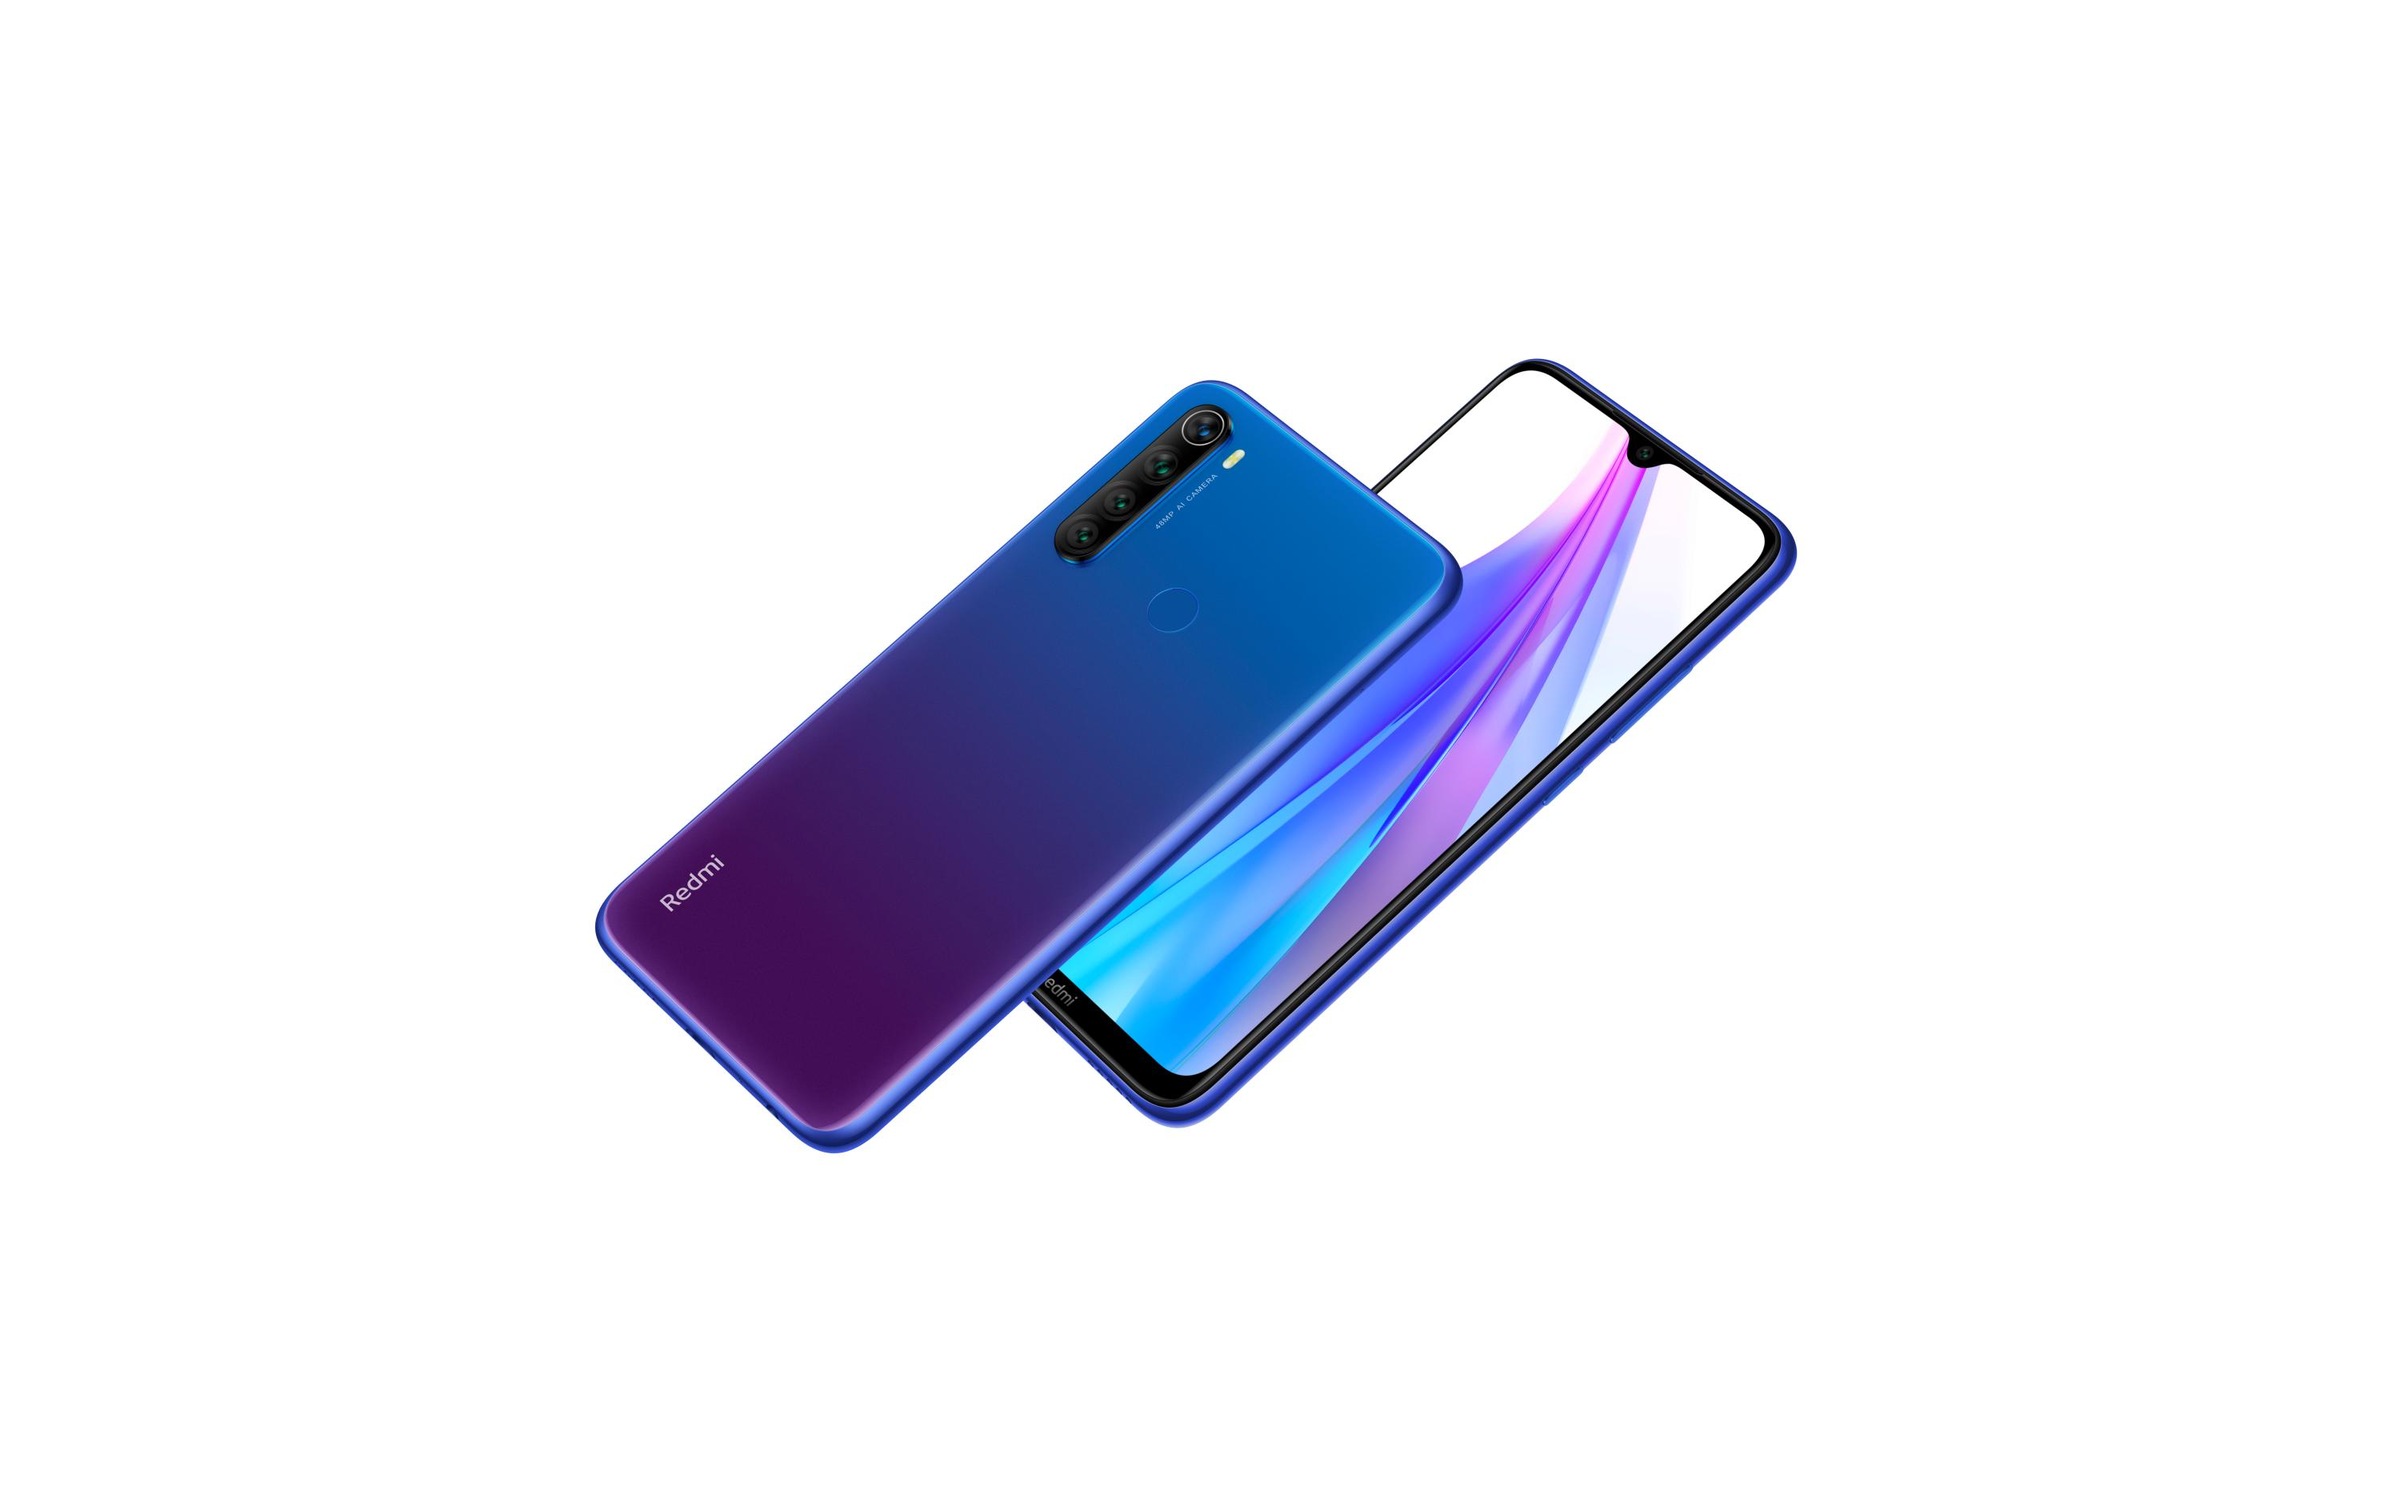 Xiaomi Smartphone »Redmi Note 8 128GB Blau«, Blau, 16 cm/6,3 Zoll, 128 GB Speicherplatz, 48 MP Kamera